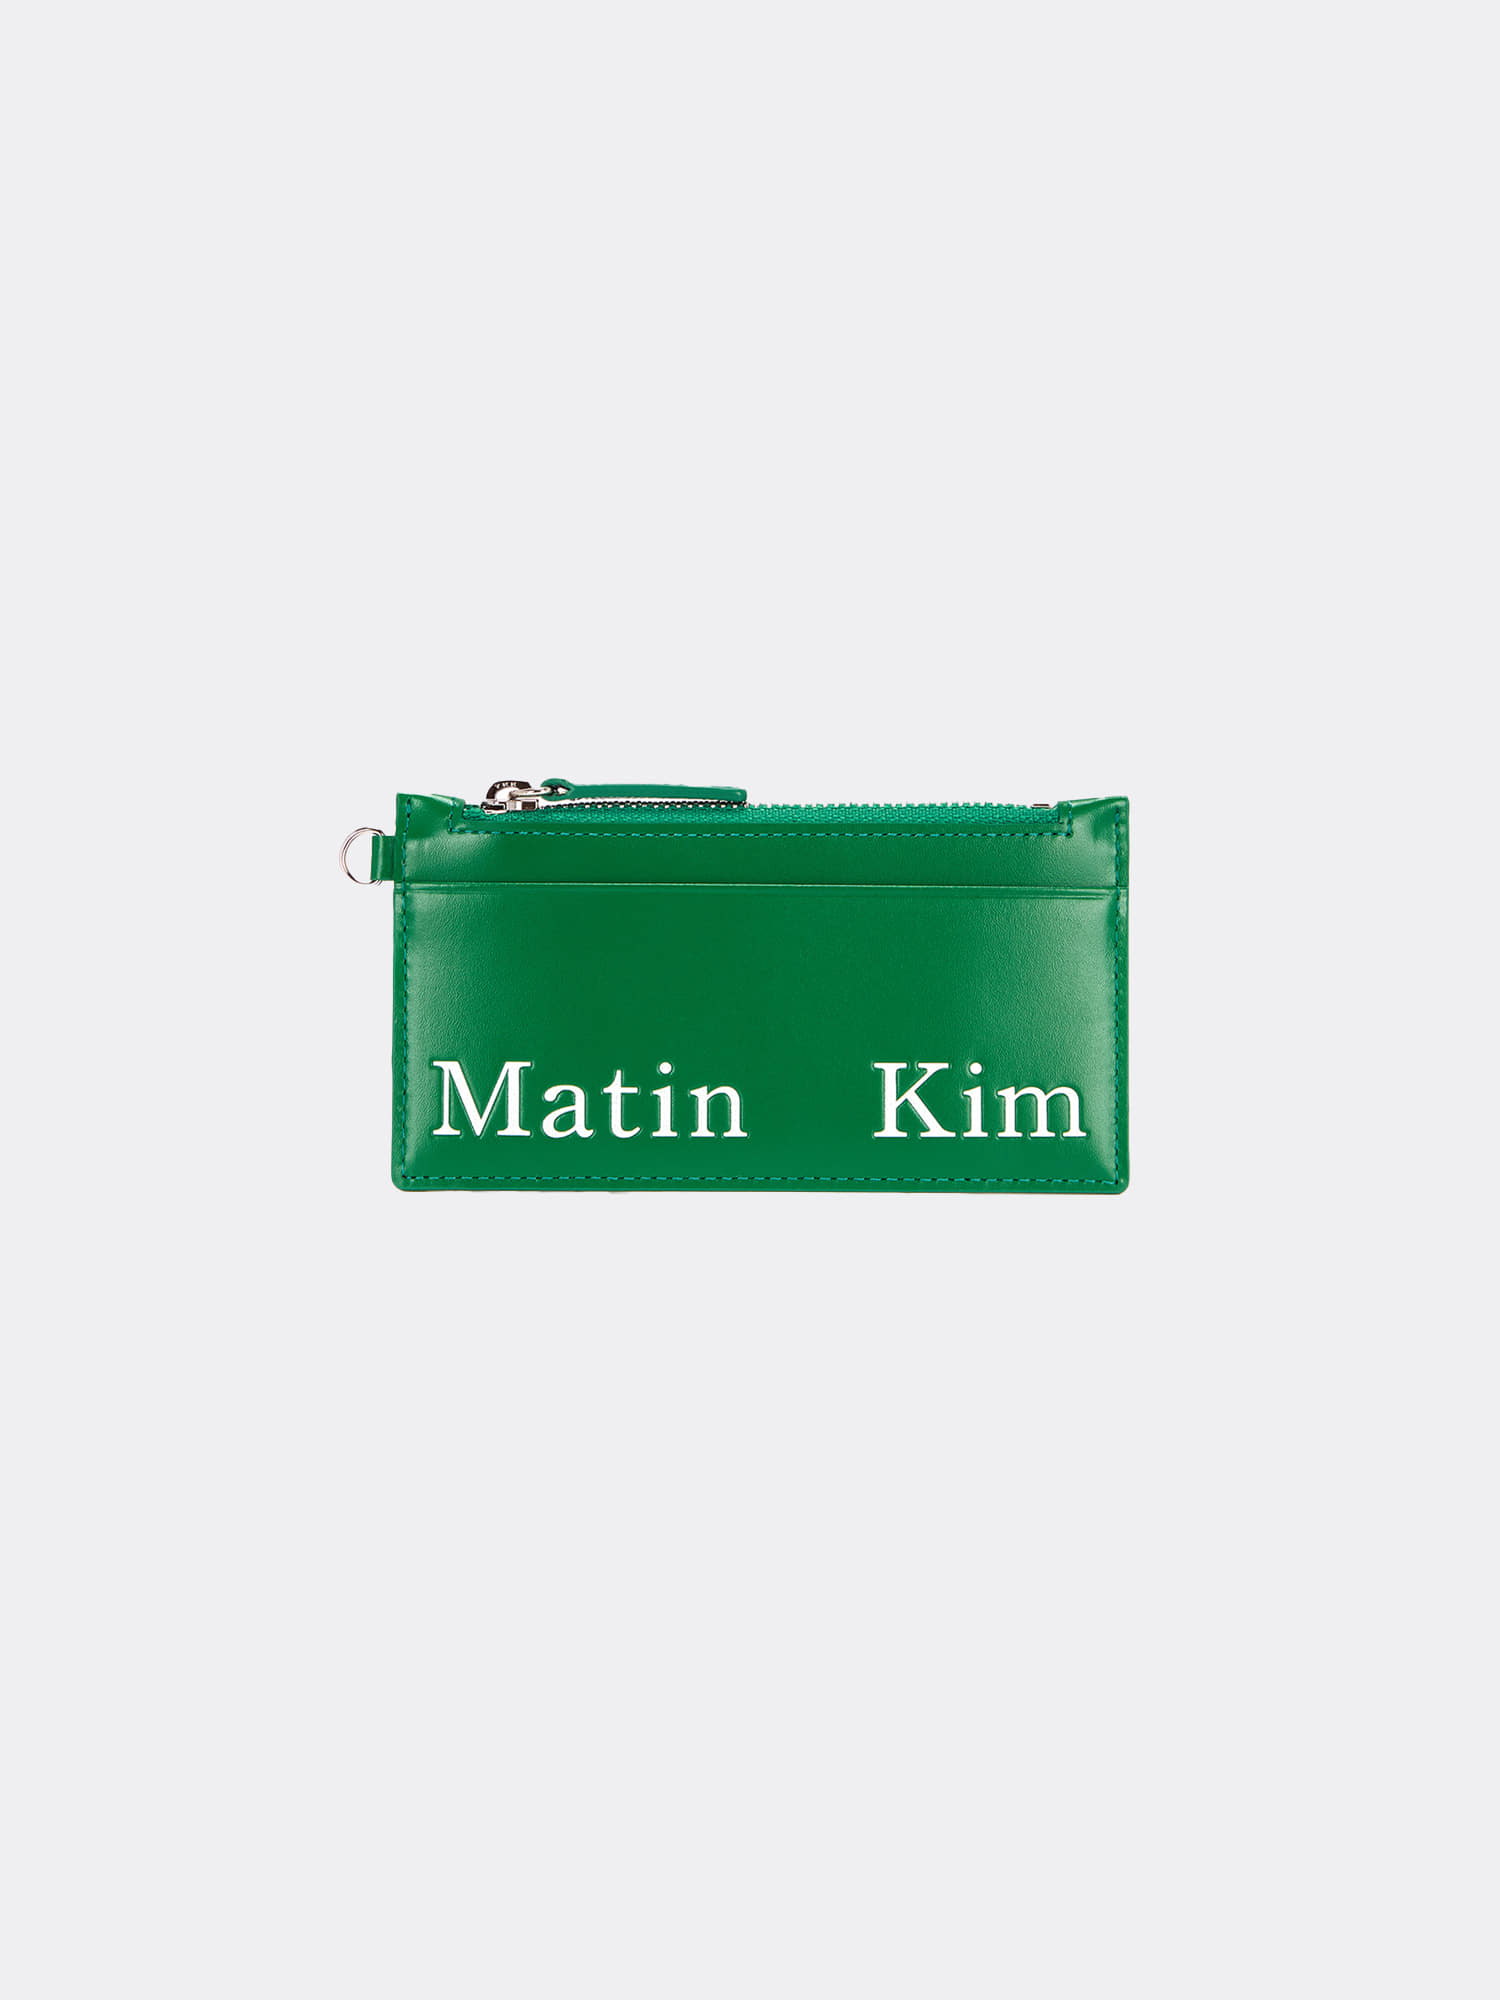 마뗑킴 MATIN KIM NECKLACE WALLET IN GREEN